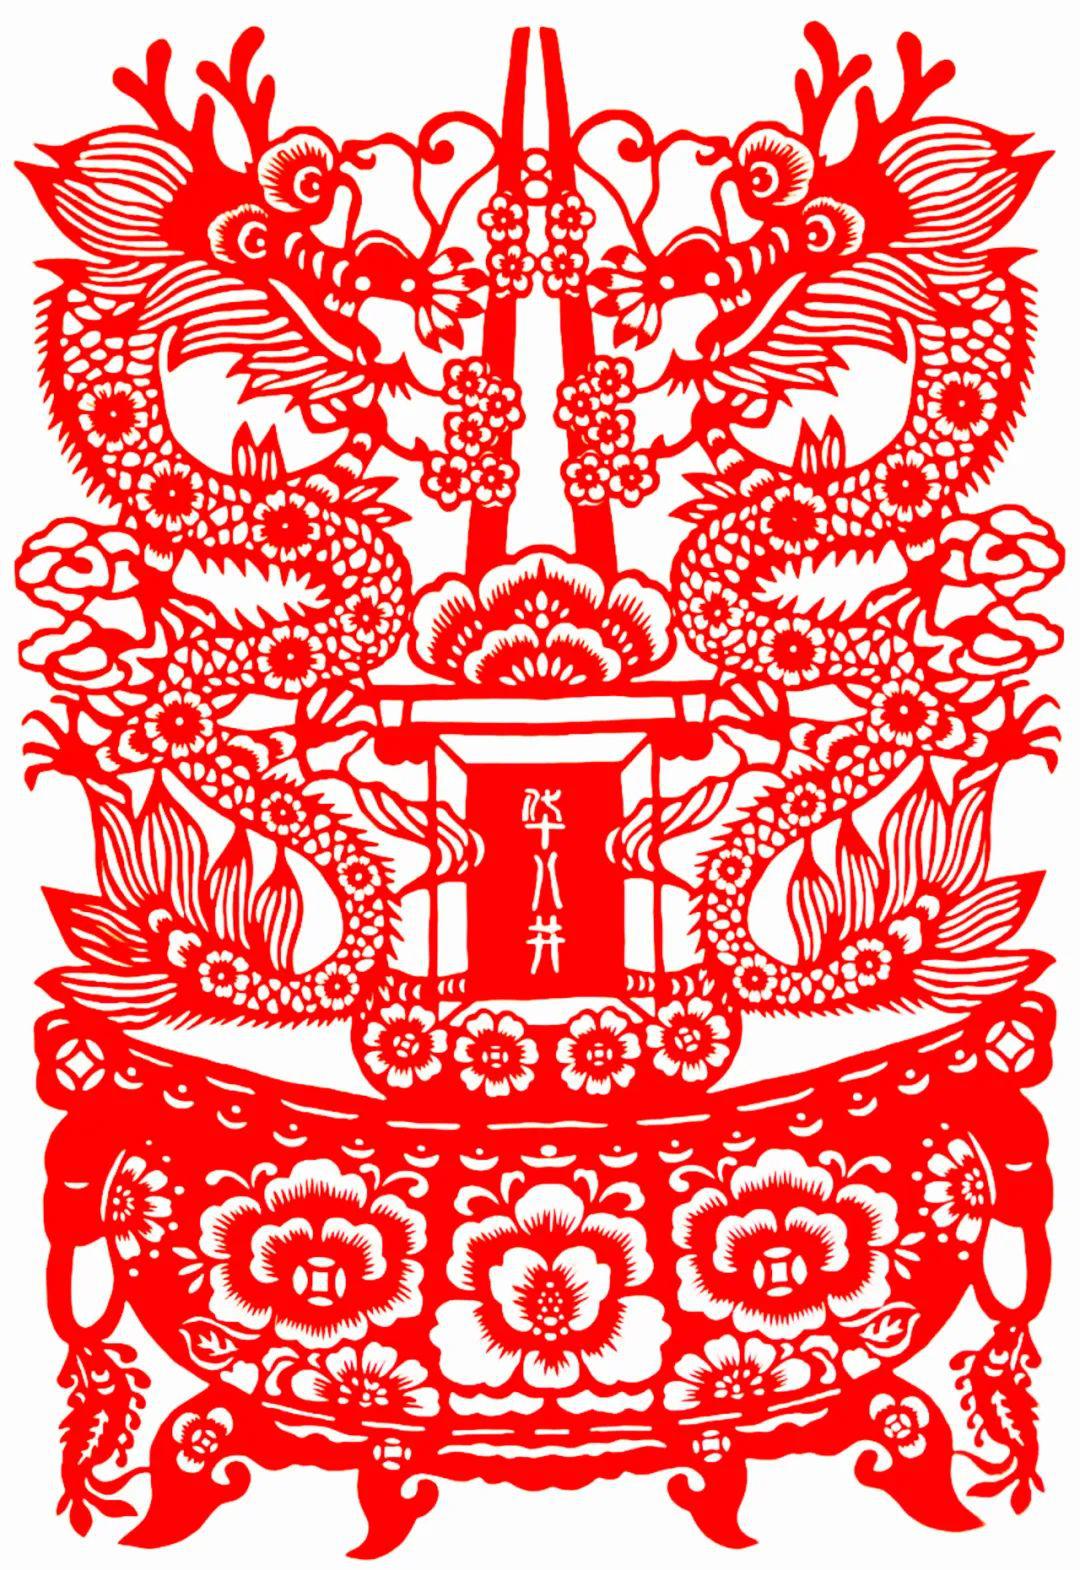 中国民间剪纸微刊《百年献瑞迎新年》全国龙文化剪纸精品展览 图261